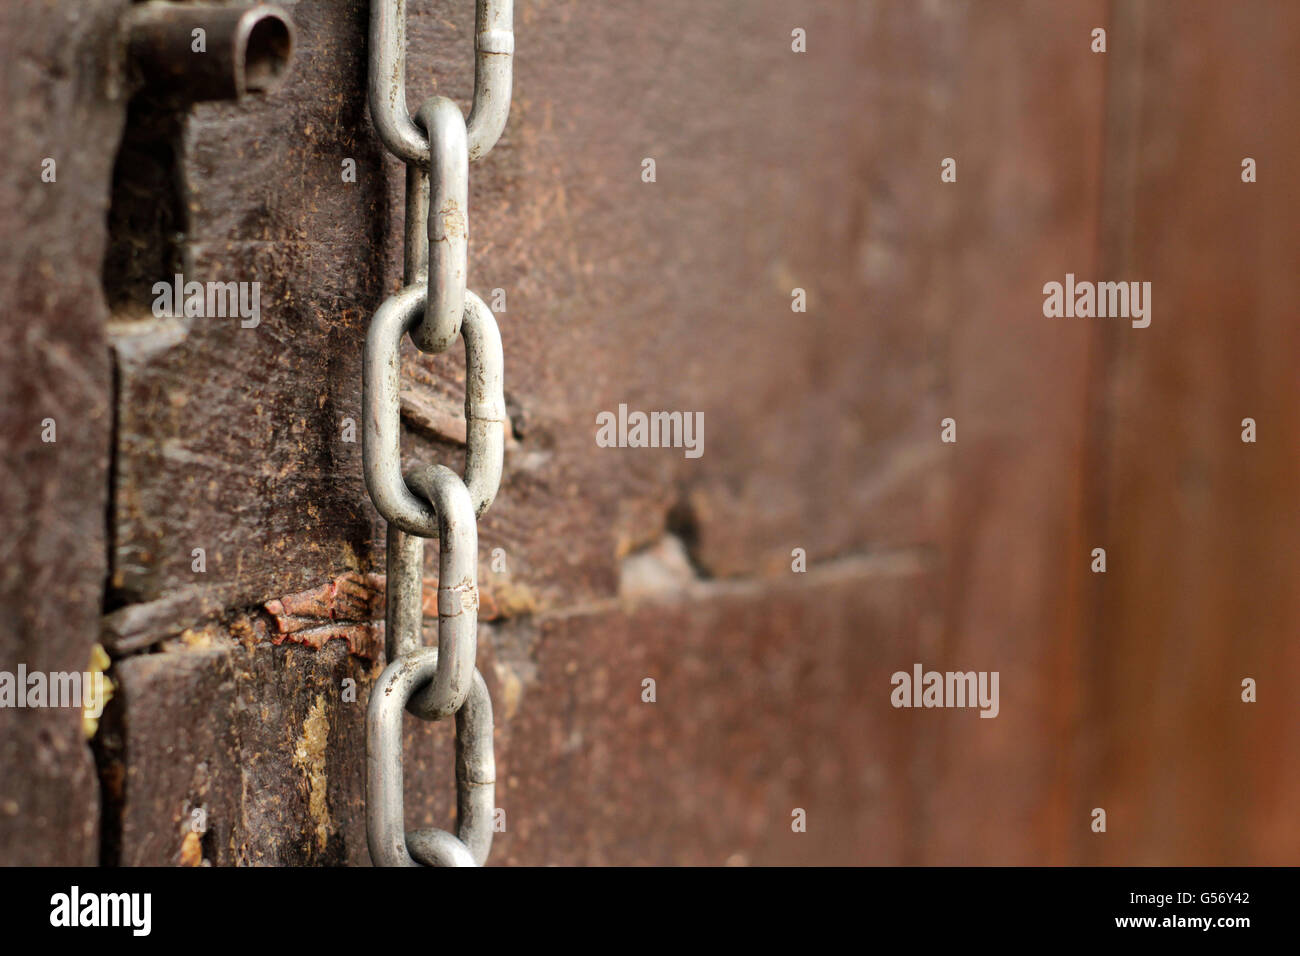 Fotografía de una cadena de metal en la puerta de madera Foto de stock